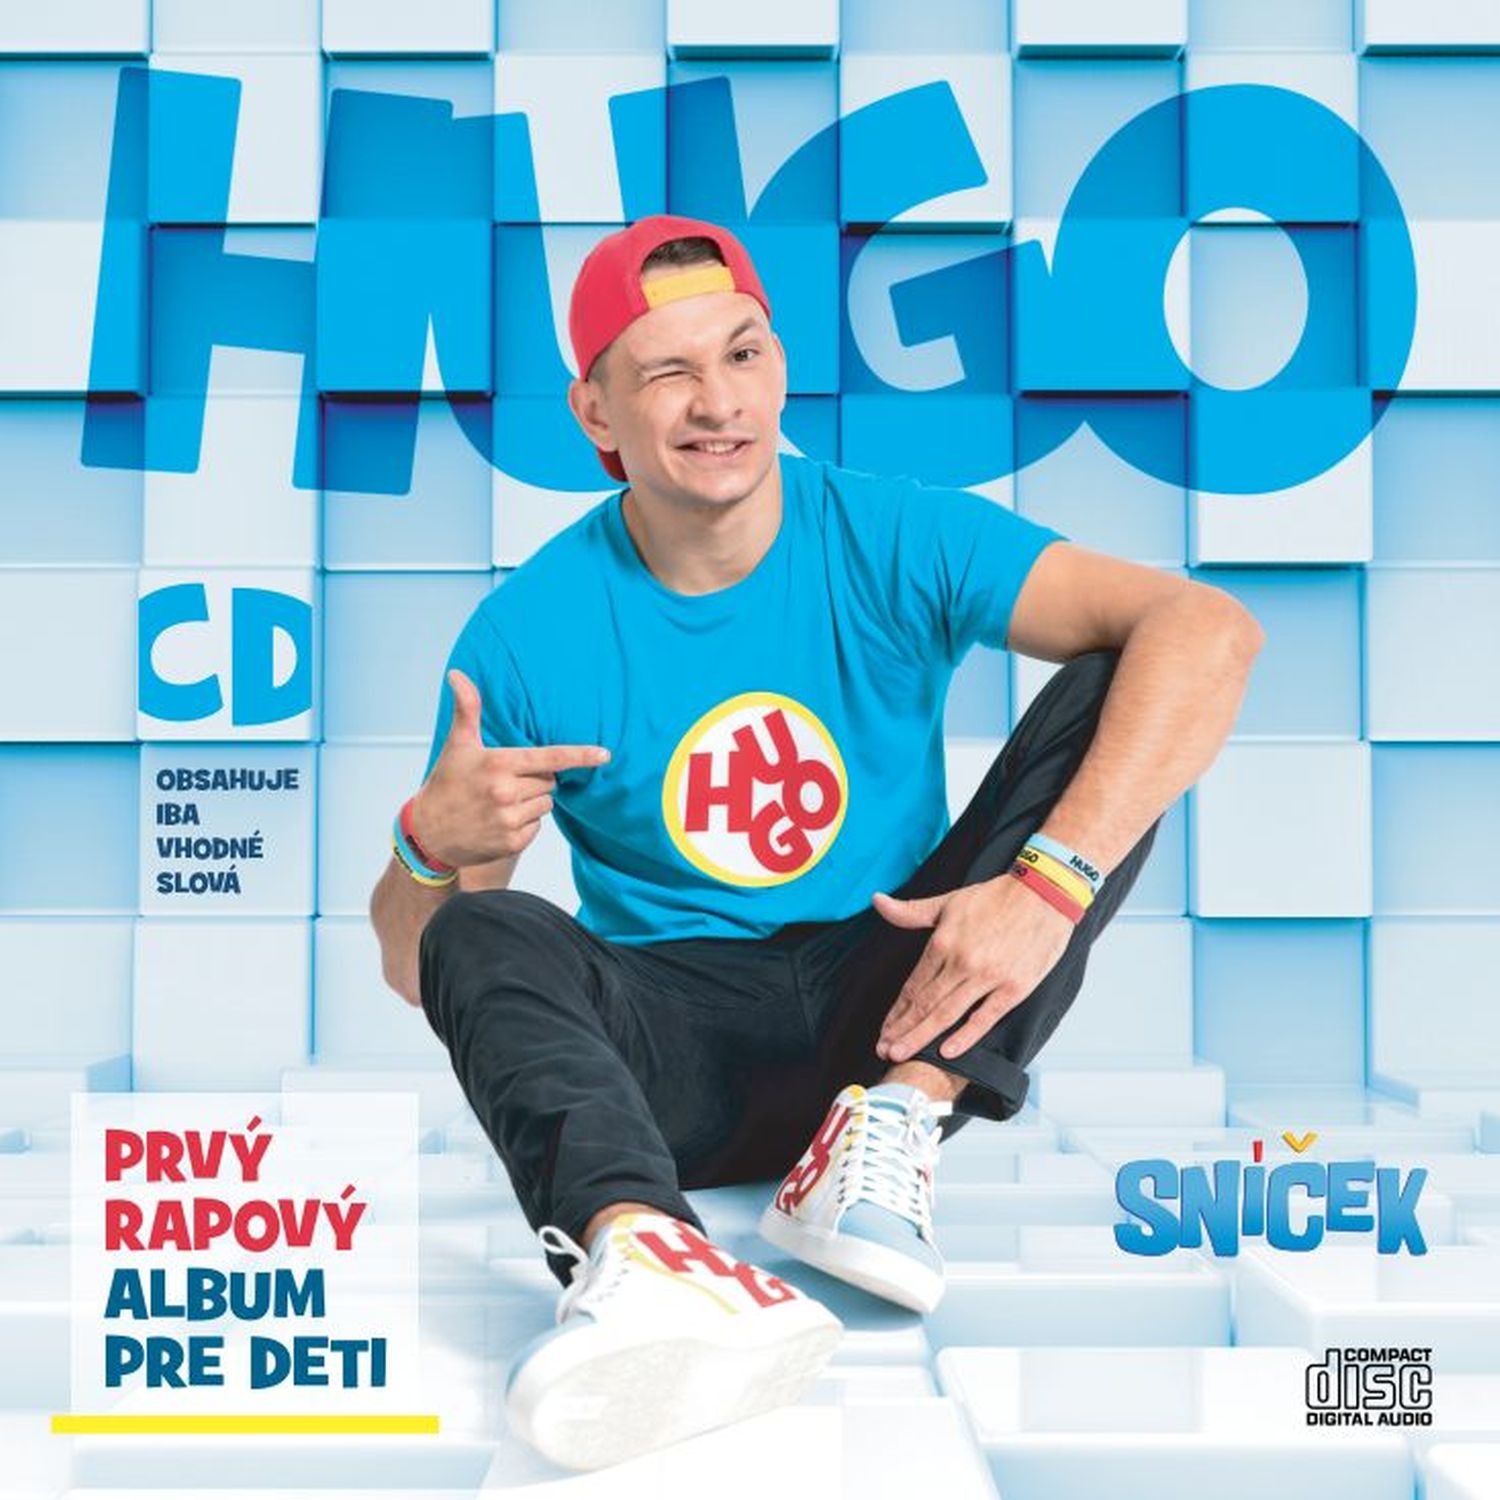 CD Shop - HUGO PRVY RAPOVY ALBUM PRE DETI (SNICEK HUGO)